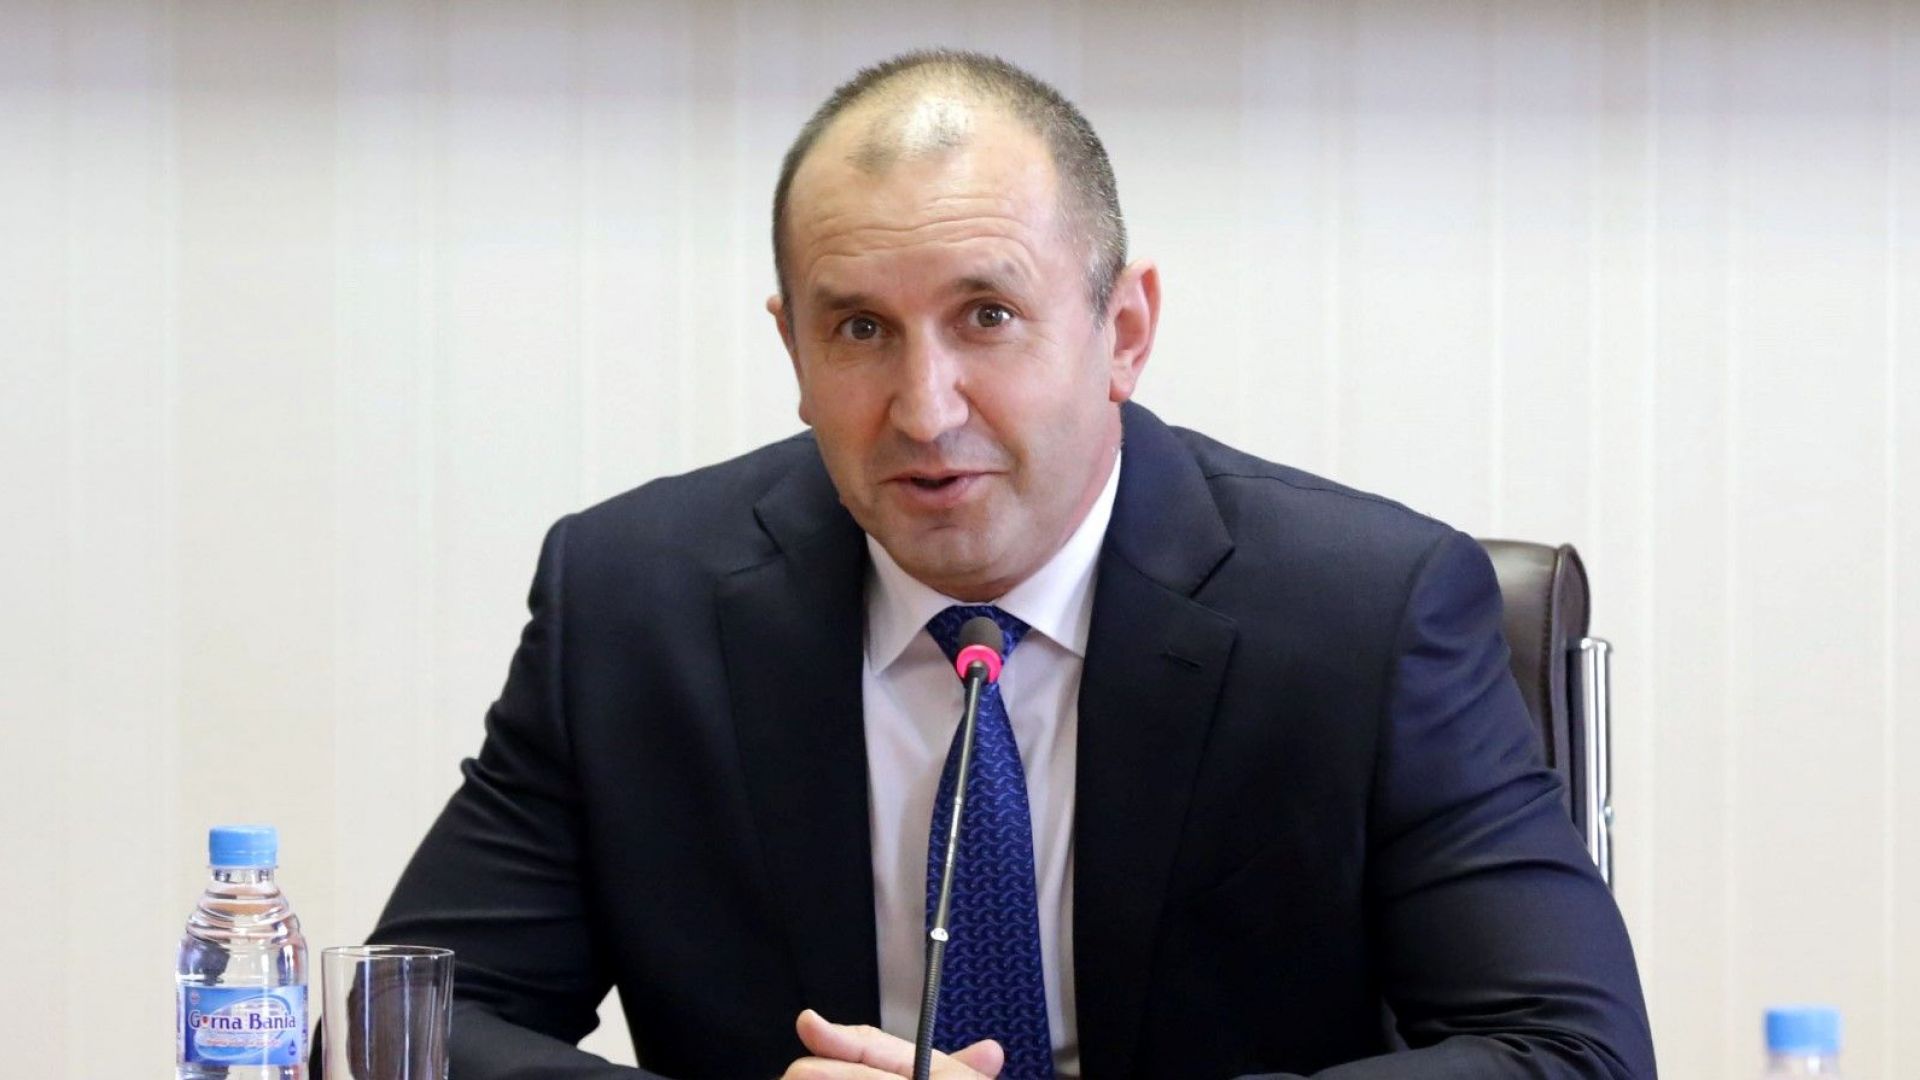 Румен Радев пред "Комерсант": България има нужда от преки доставки на руски газ - да го наречем "Български поток"